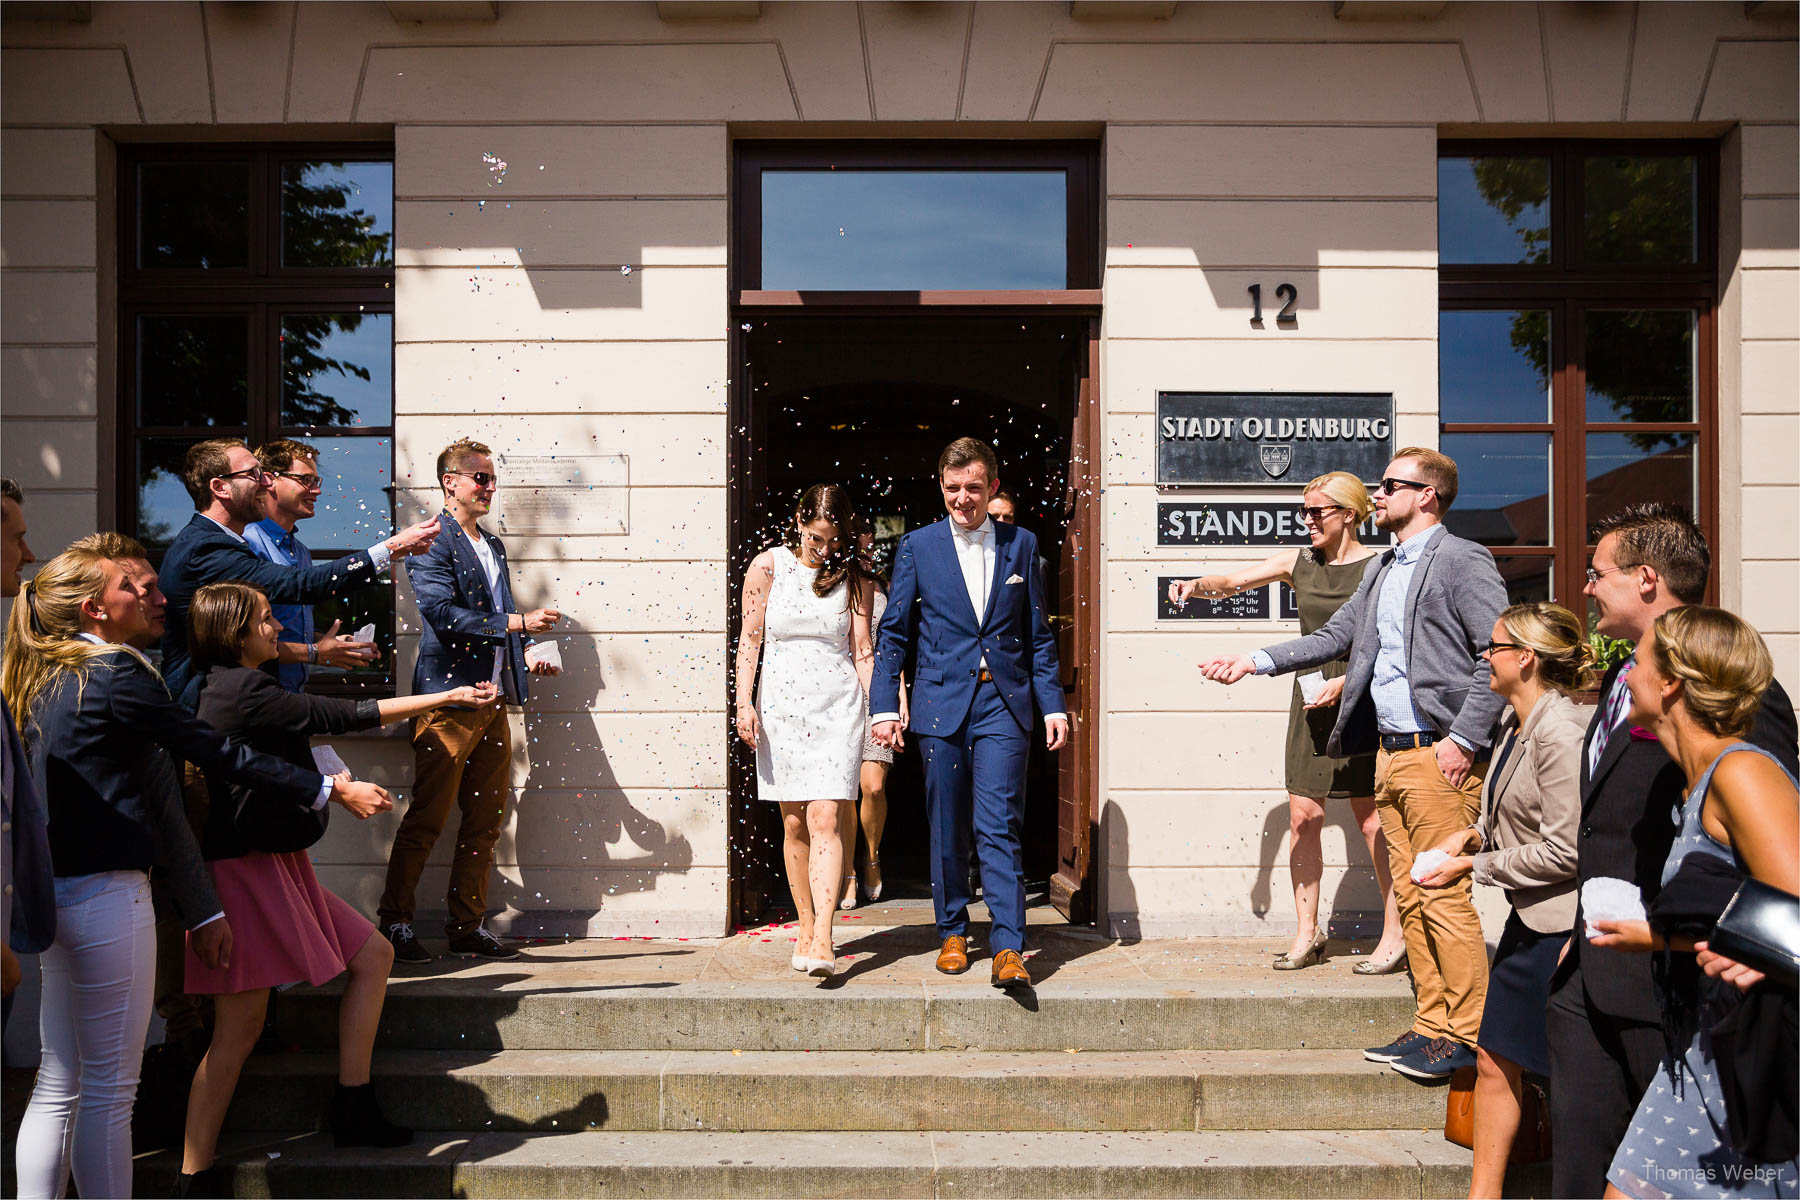 Standesamtliche Hochzeit im Standesamt am Pferdemarkt in Oldenburg, Hochzeitsfotograf Oldenburg, Thomas Weber